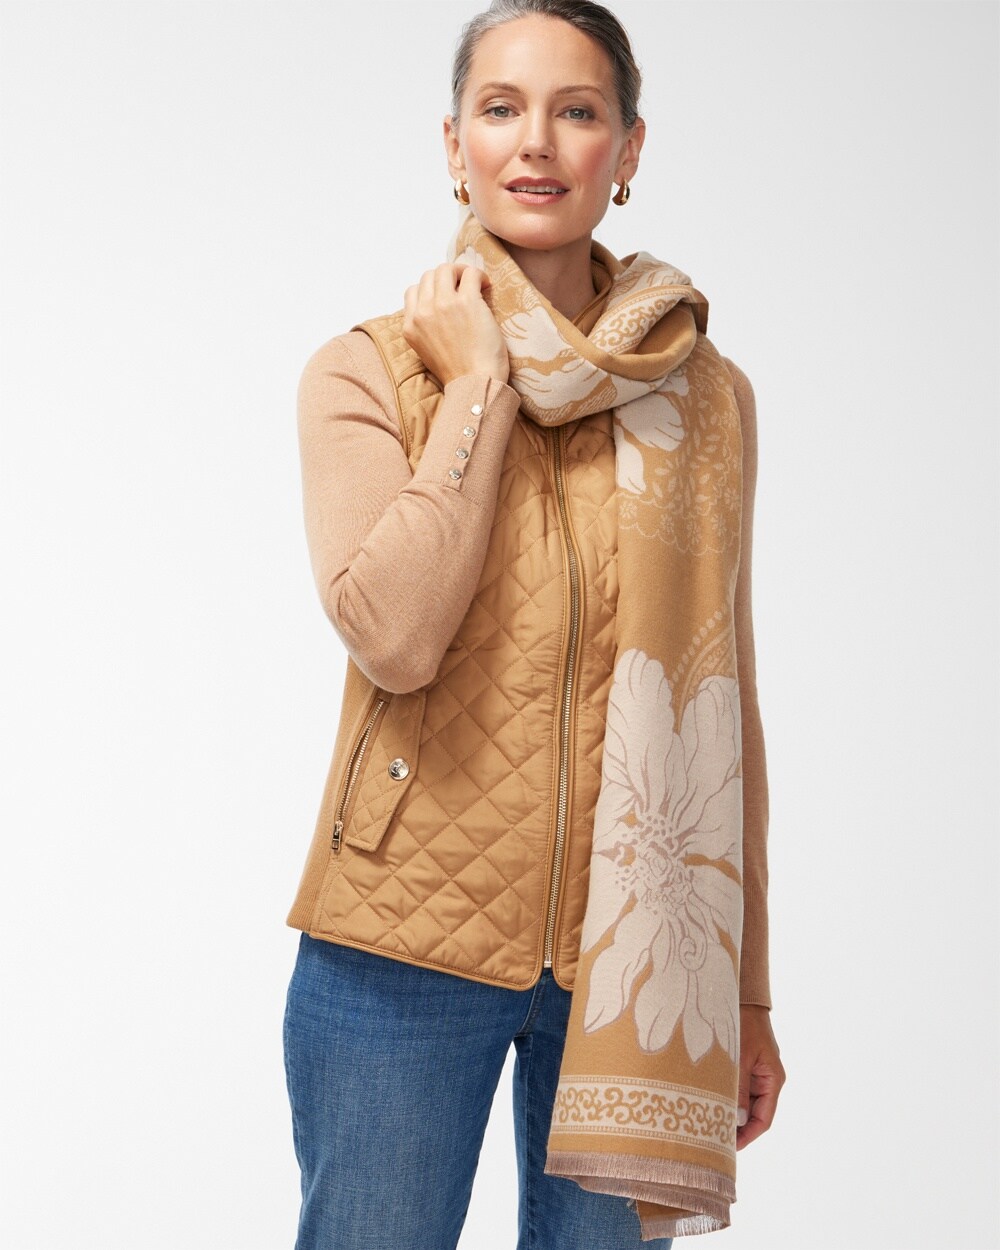 Bloomingdale's Leopard Print Wool Scarf - 100% Exclusive - Camel